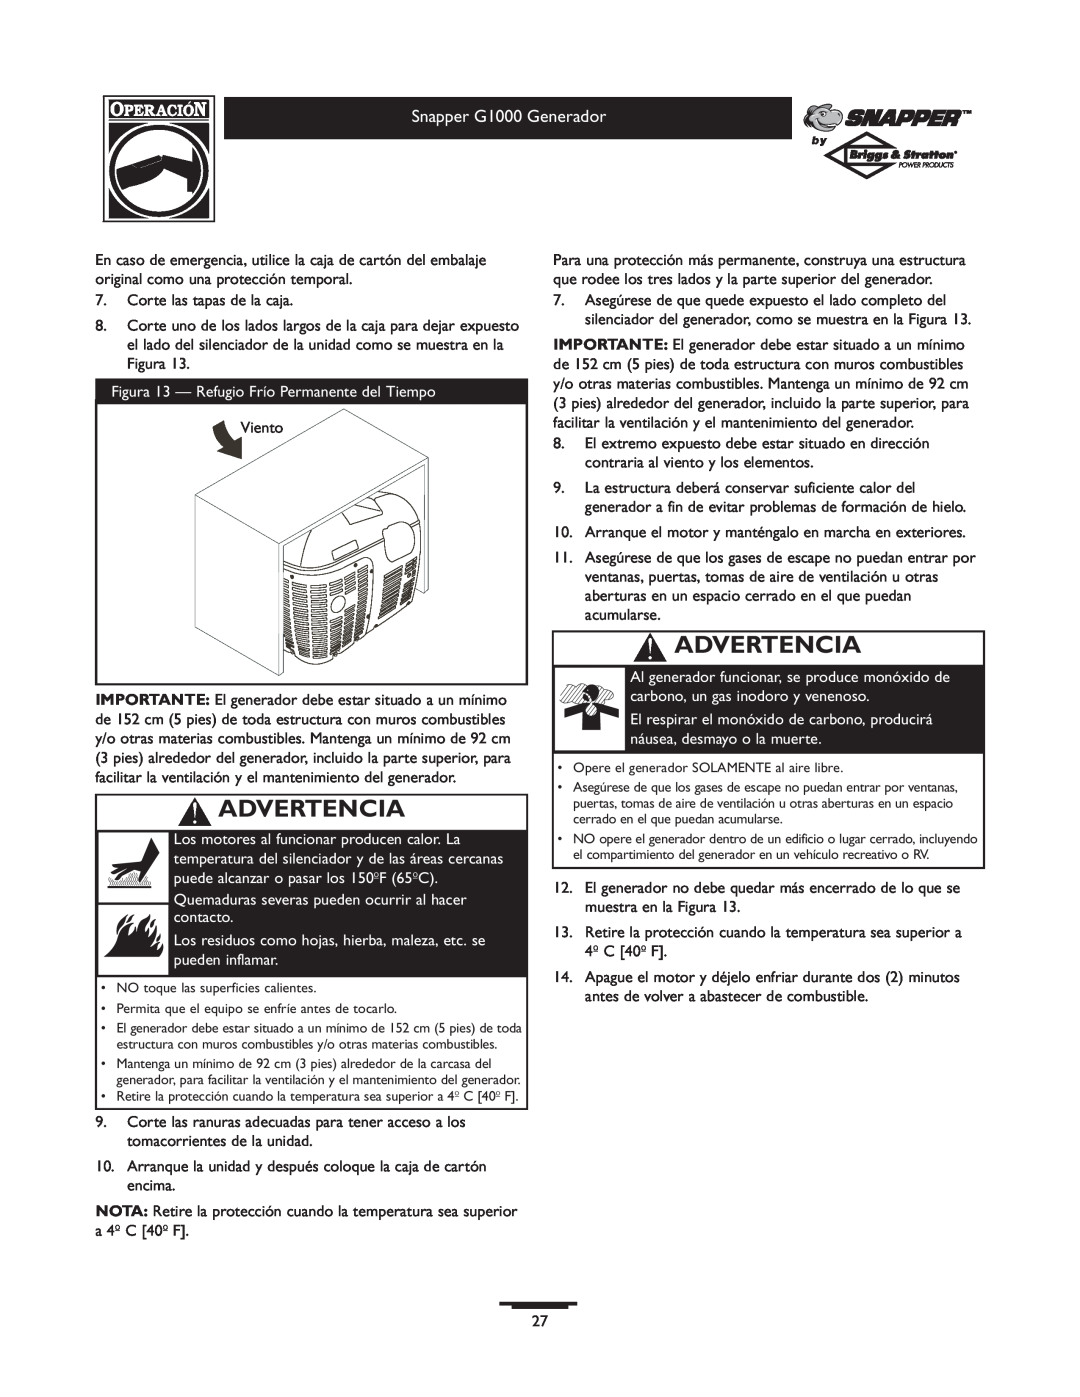 Snapper owner manual Advertencia, Snapper G1000 Generador, Figura 13 - Refugio Frío Permanente del Tiempo 